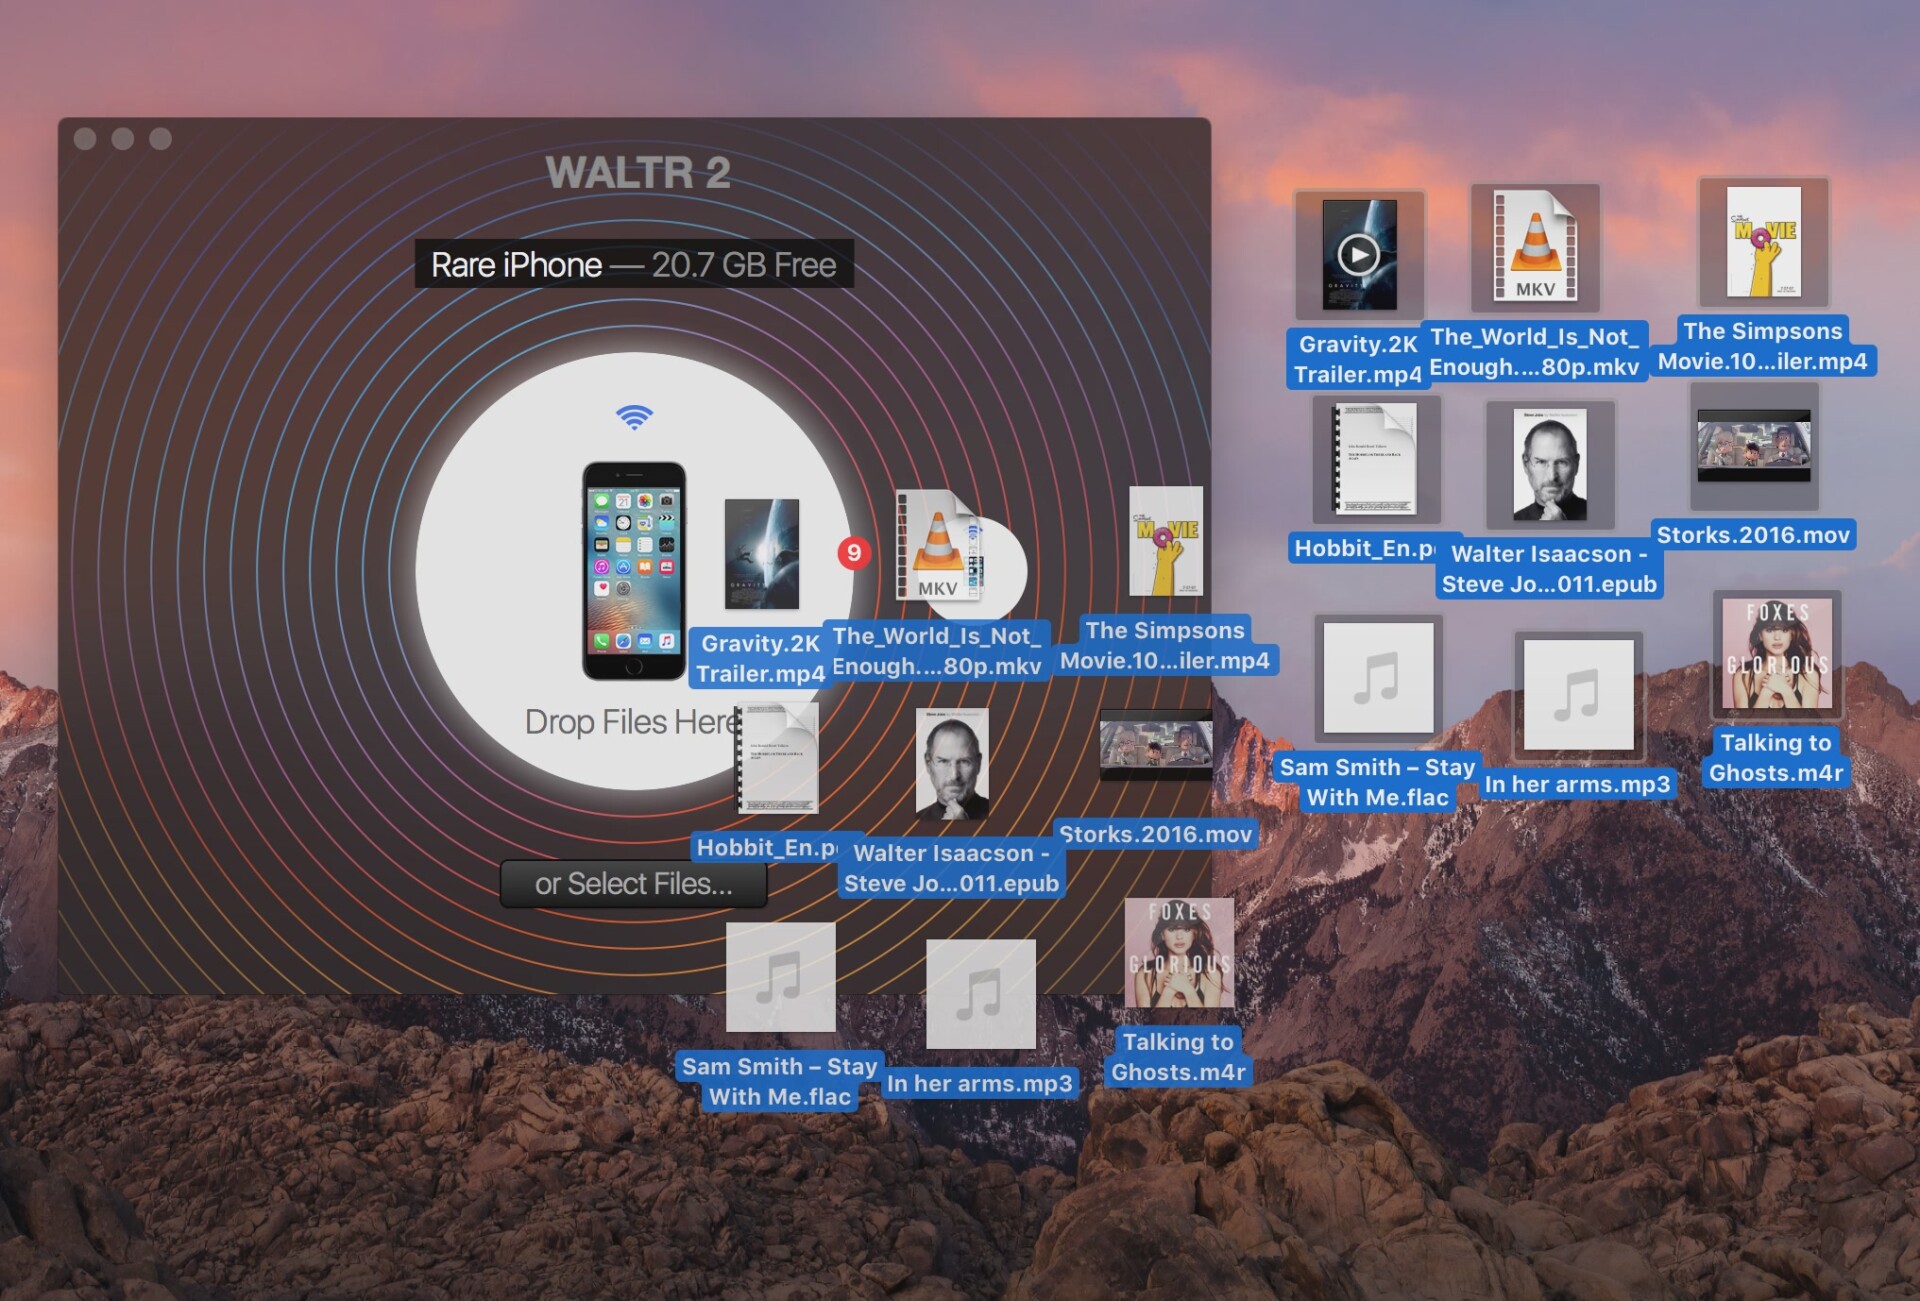 Chép dữ liệu vào iDevice dễ dàng với WALTR 2, không cần JAILBREAK hoặc mở iTunes